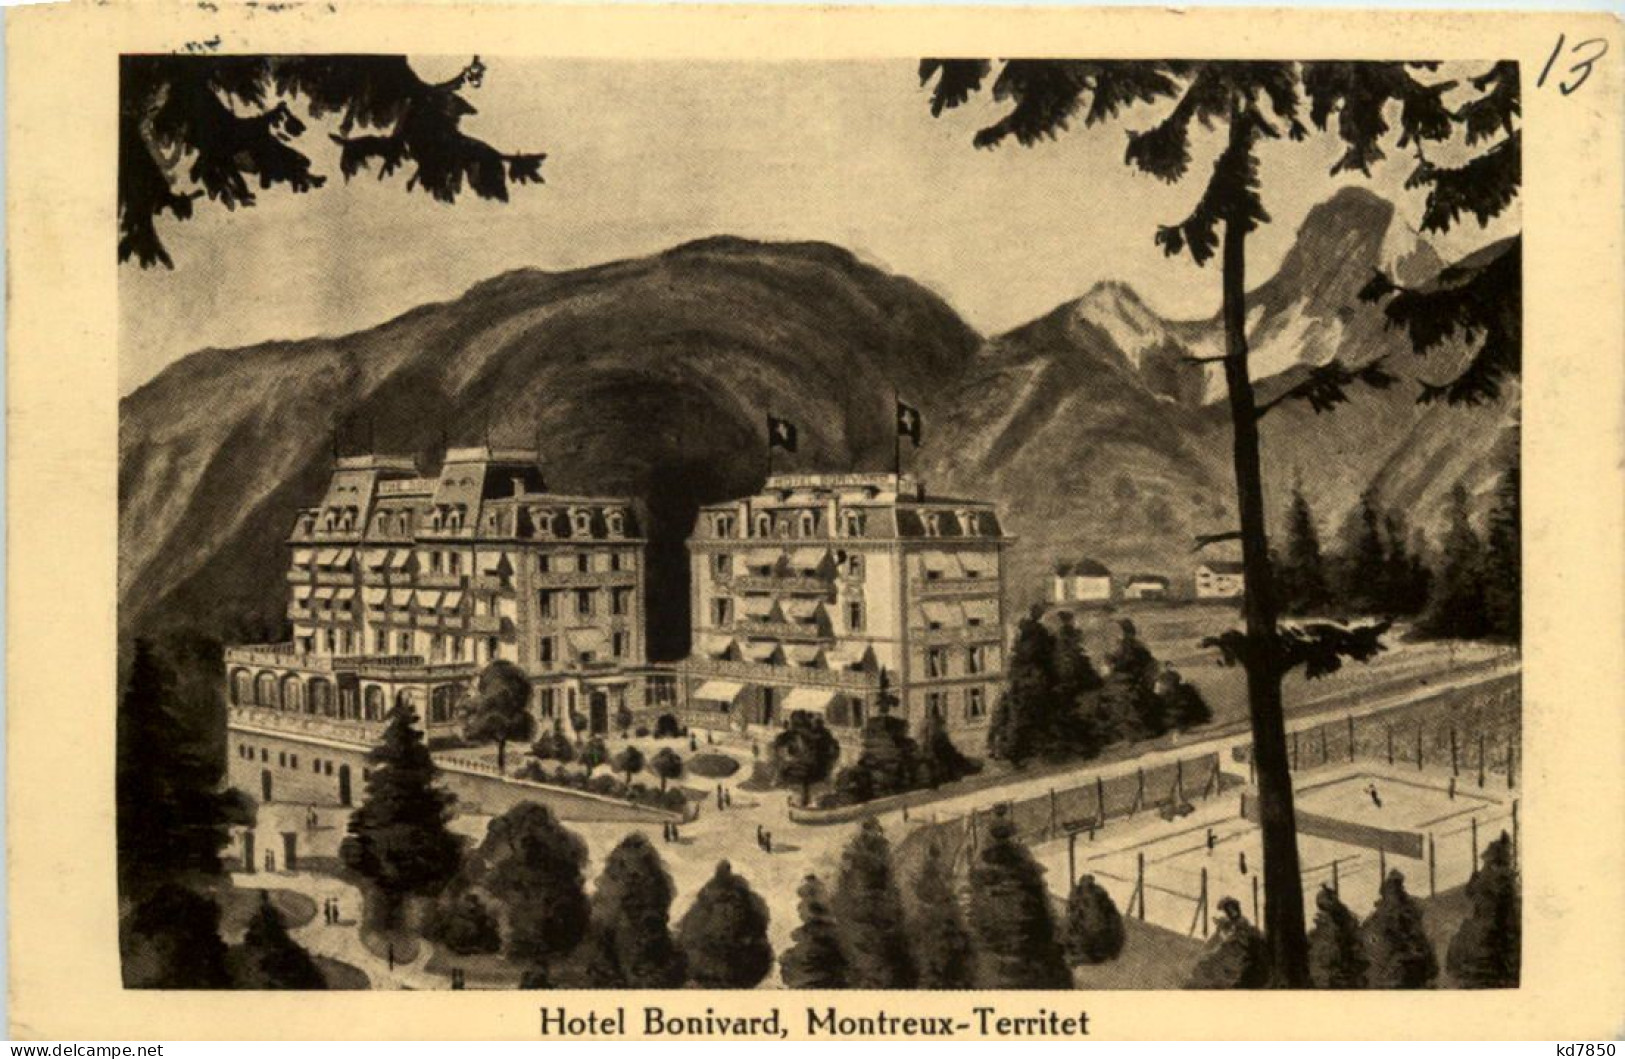 Montreux-Territet, Hotel Bonivard - Montreux